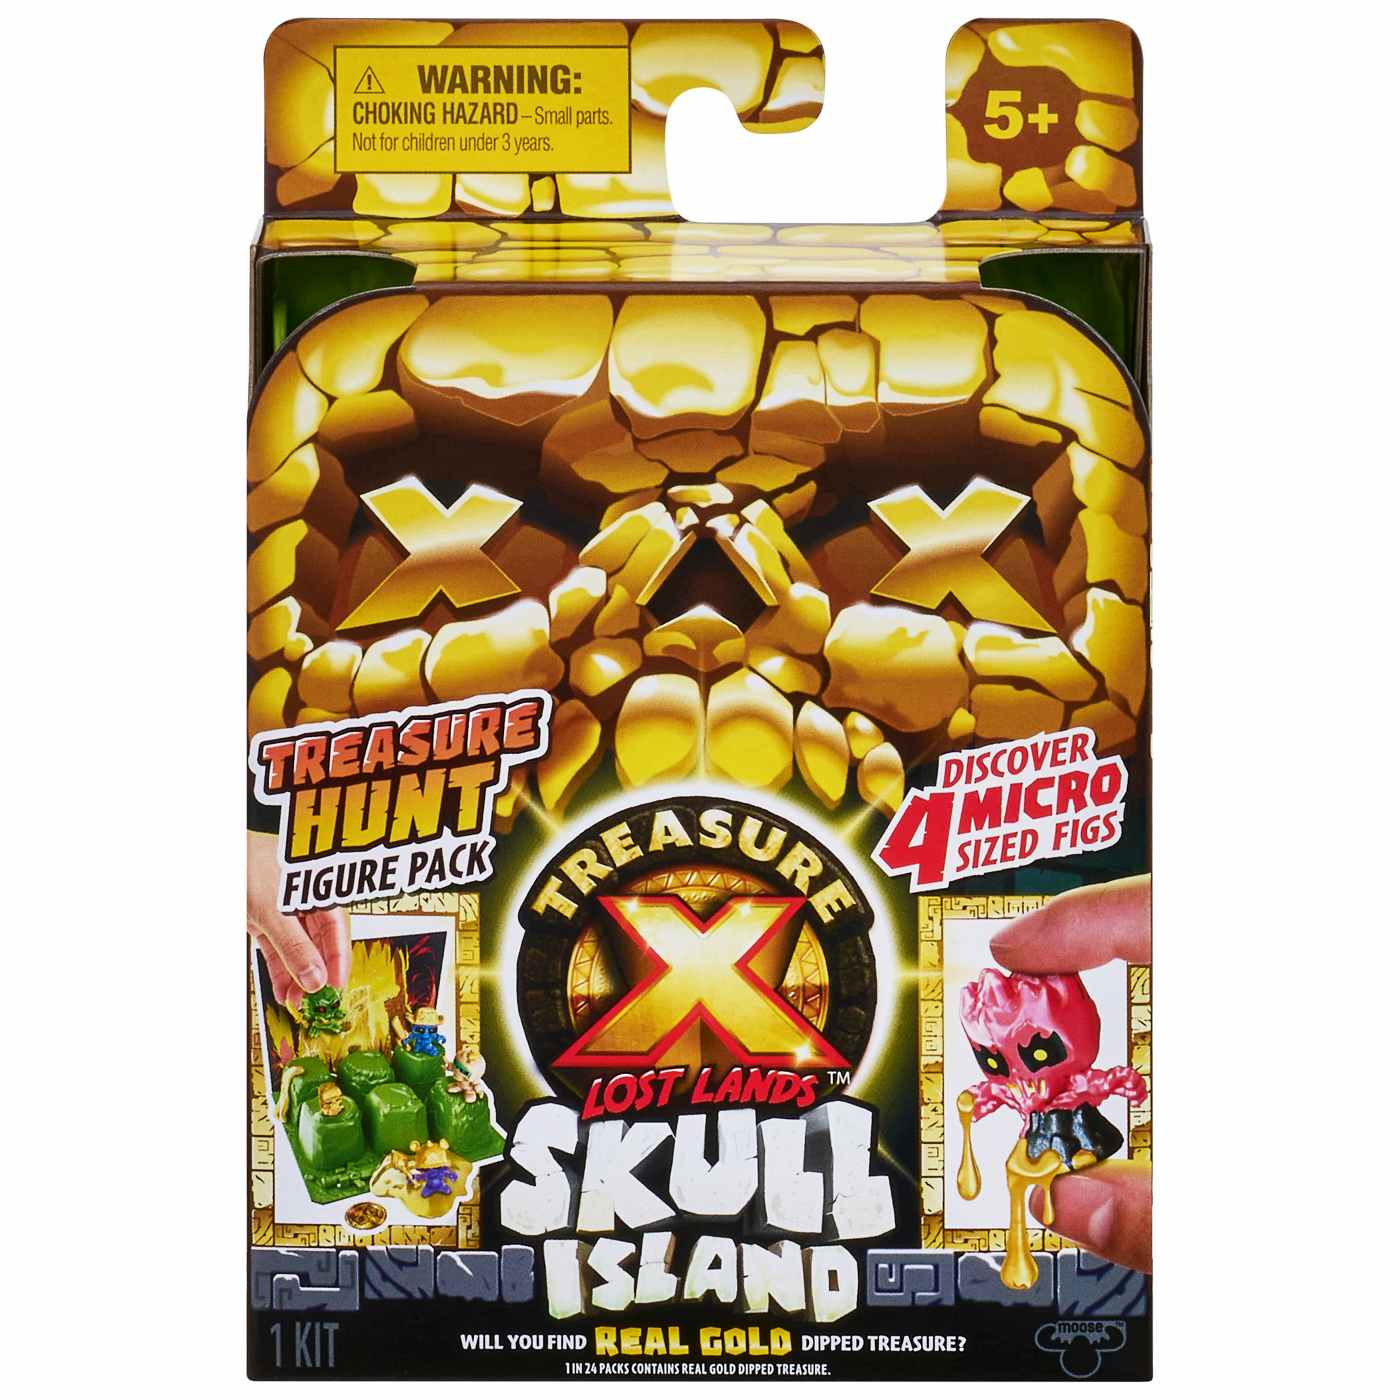 Treasure X Lost Lands Skull Island Treasure Hunt Micro Figure Pack